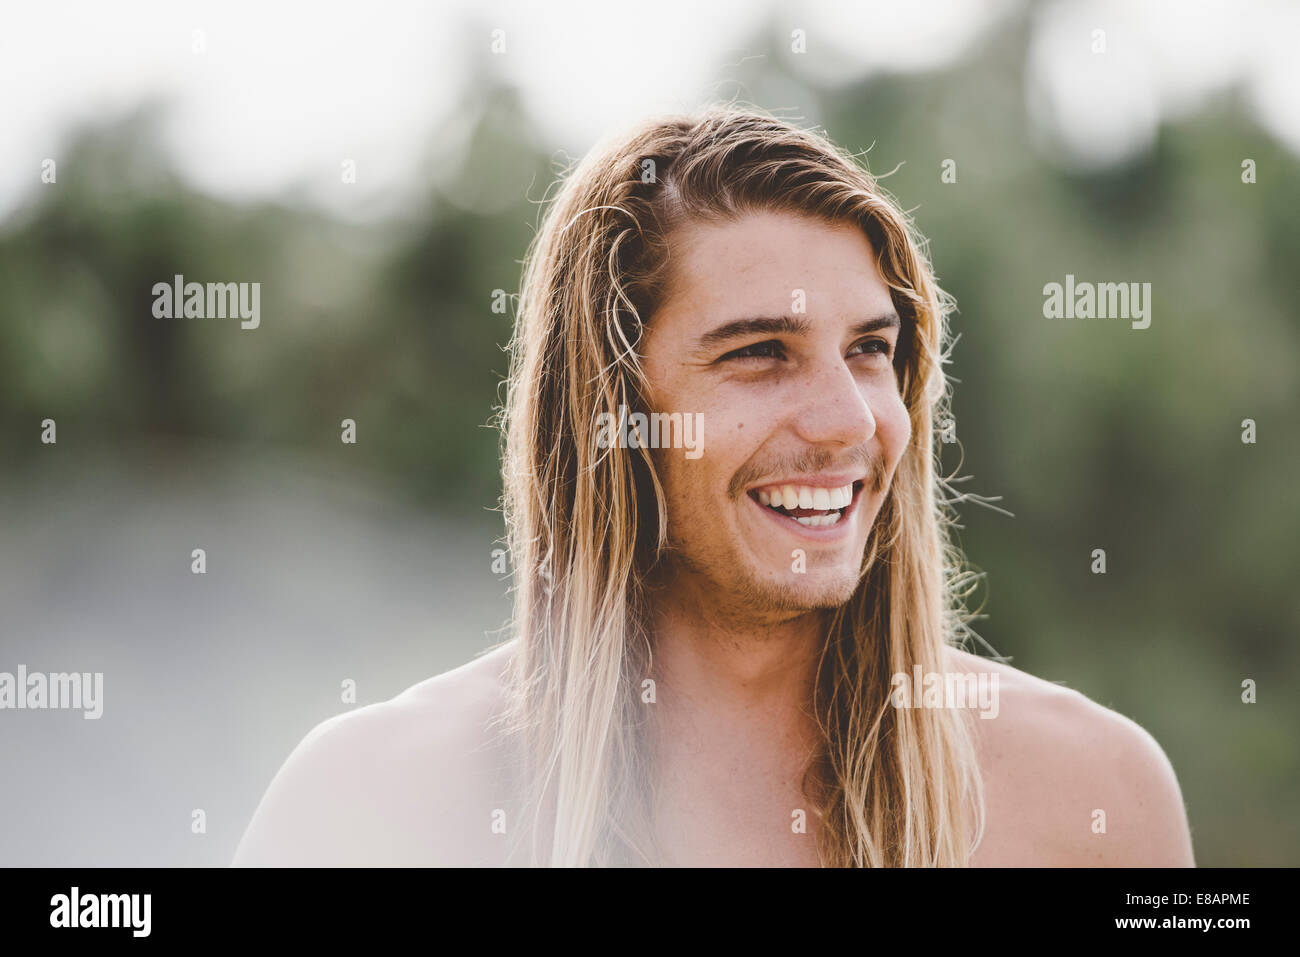 El hombre de pelo largo con una amplia sonrisa Foto de stock